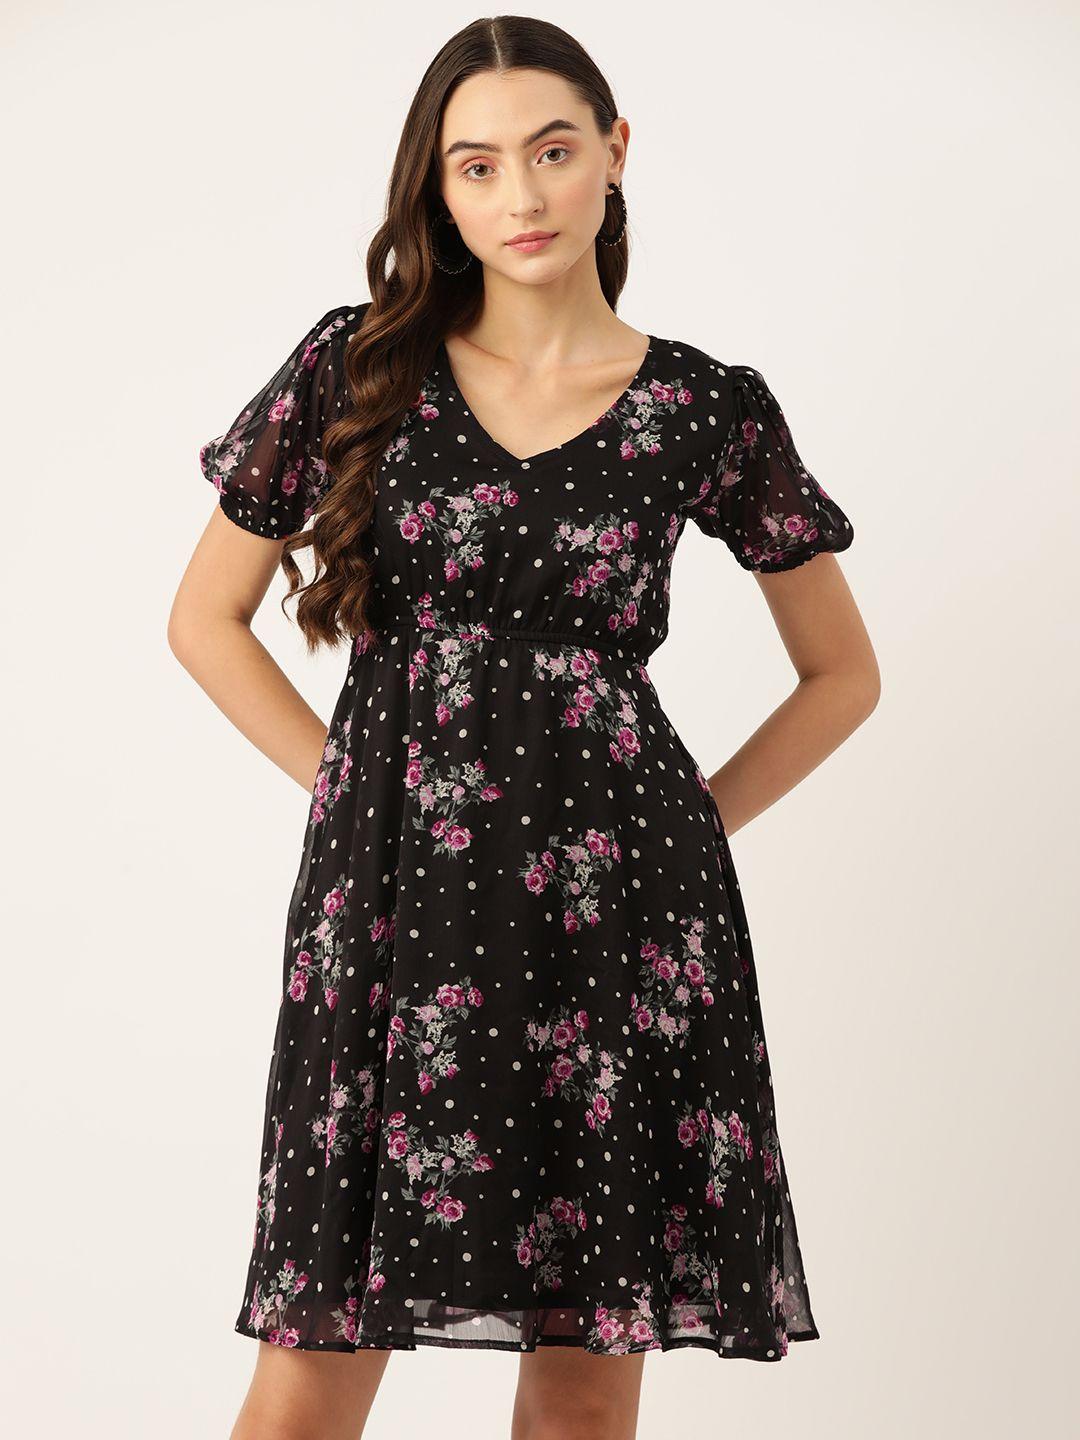 wisstler floral print puff sleeves chiffon a-line dress